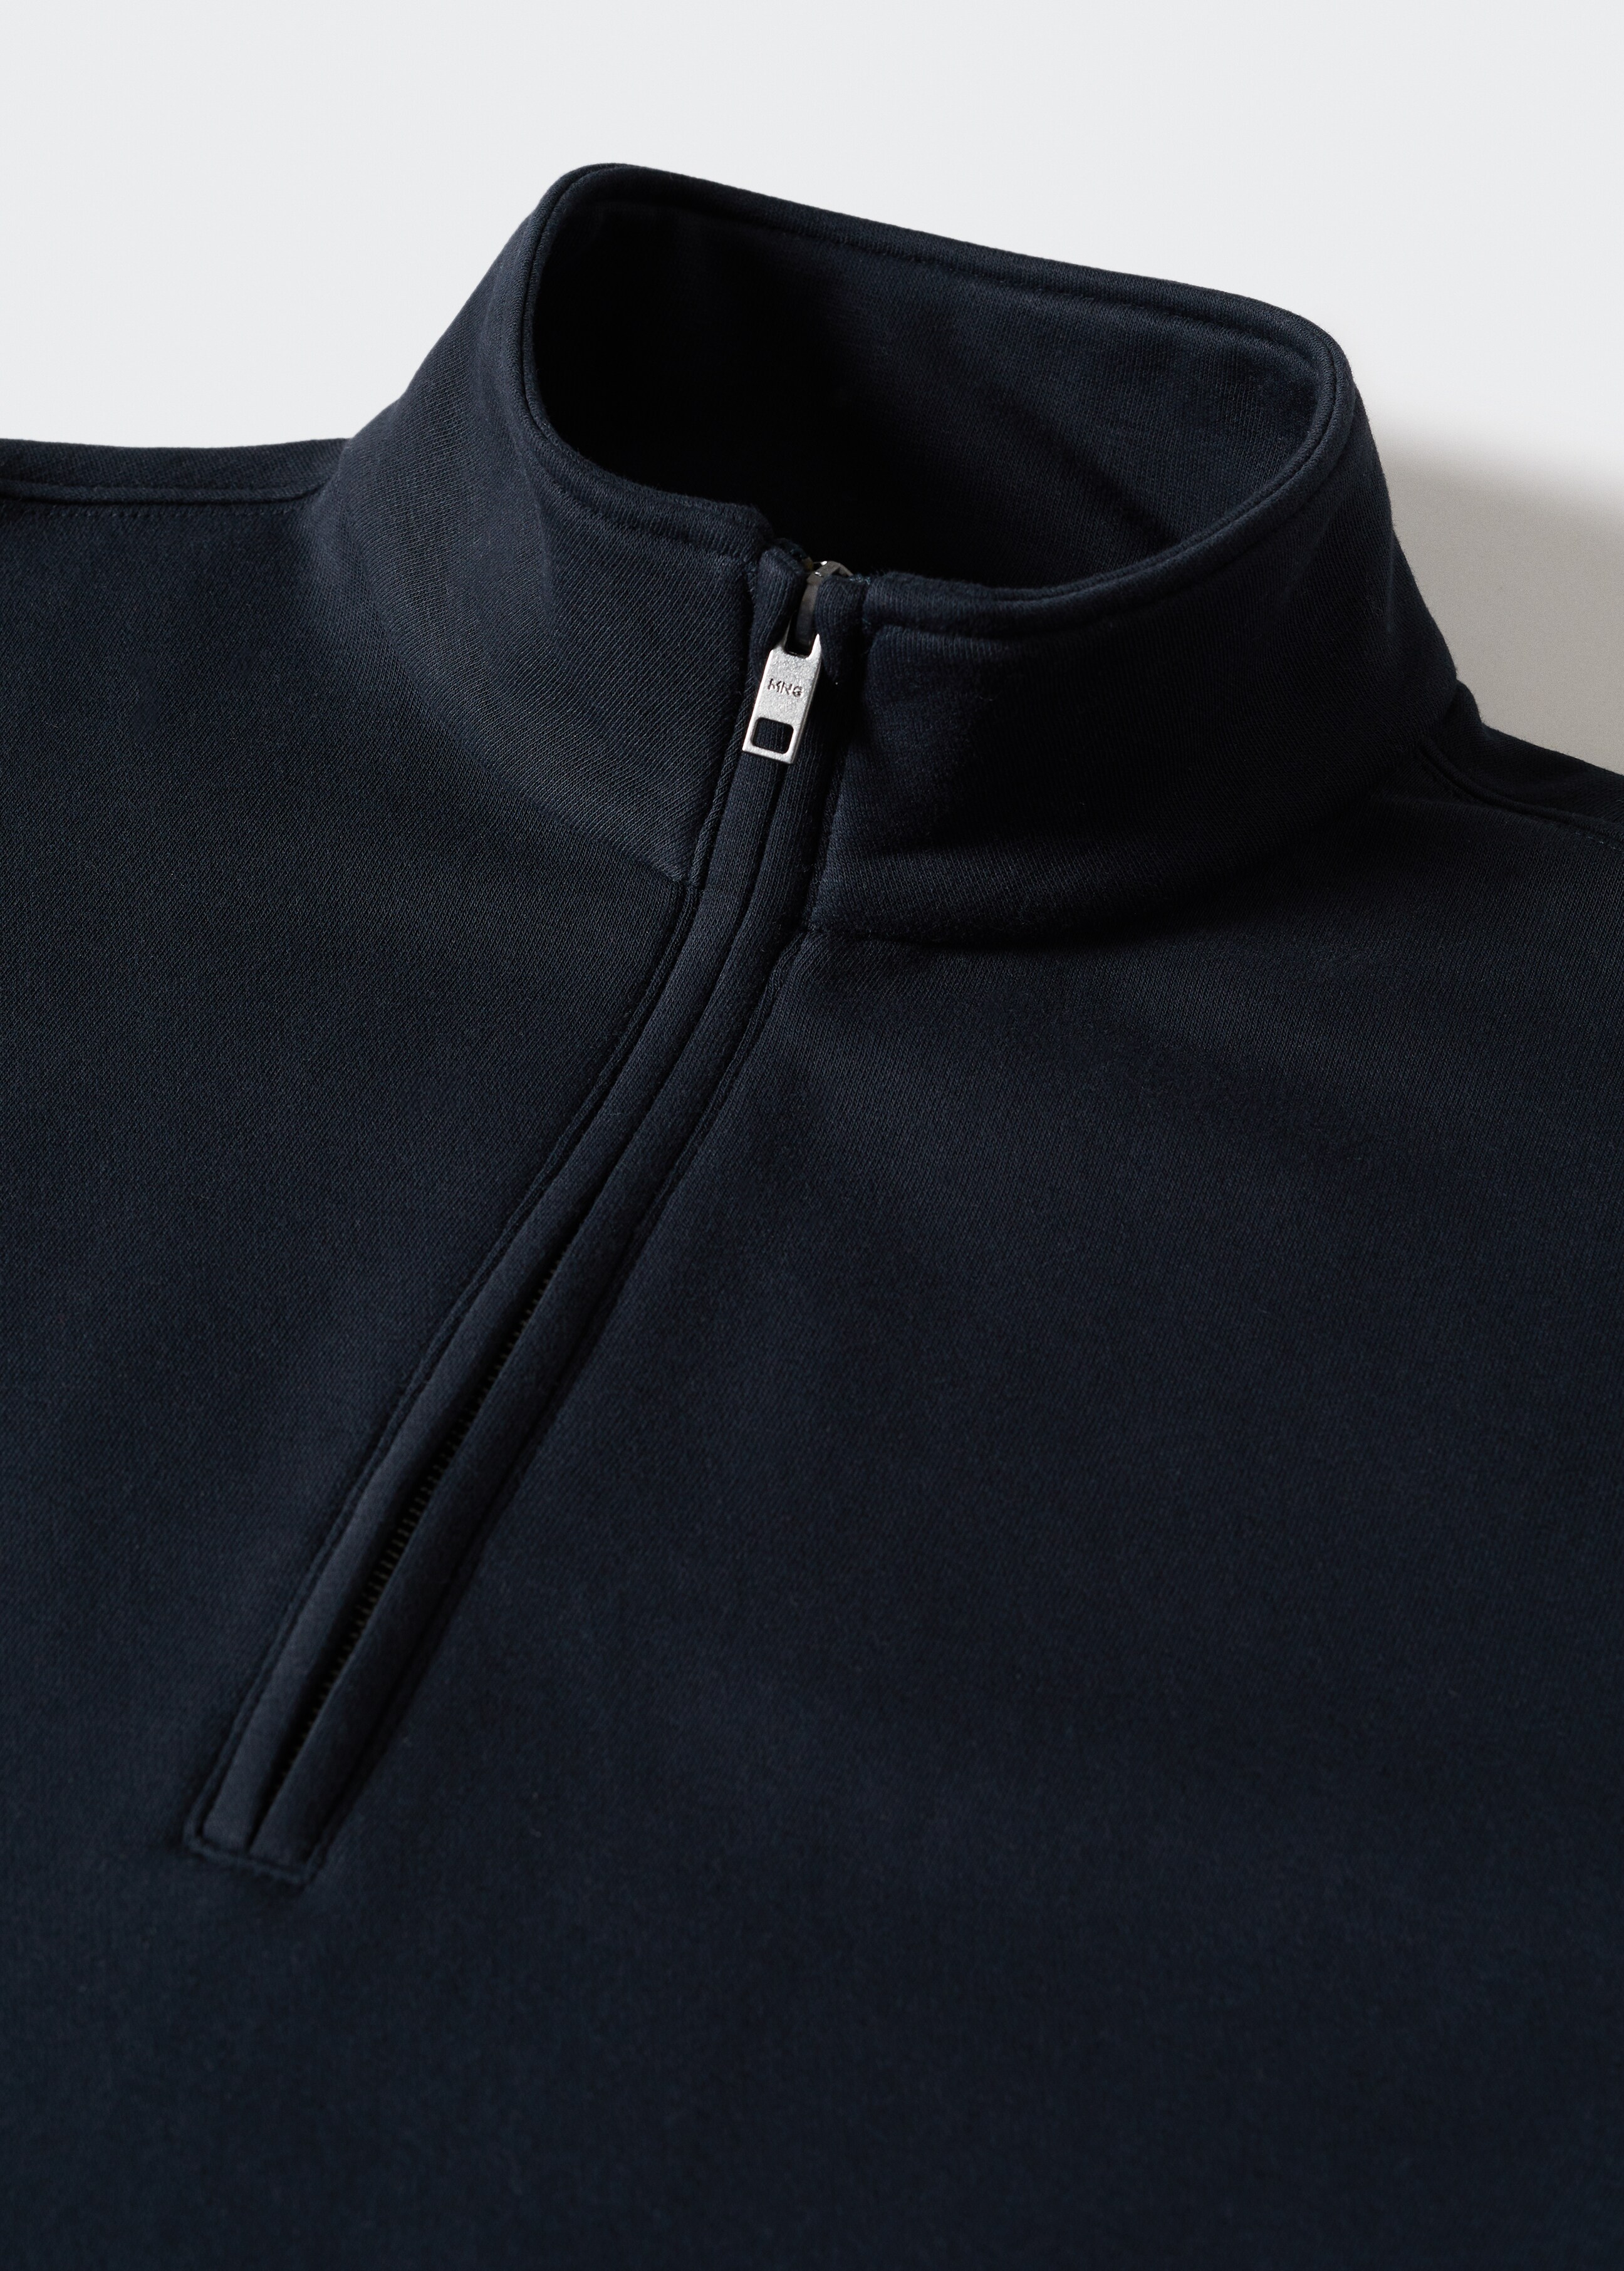 Baumwoll-Sweatshirt mit Zip-Kragen - Detail des Artikels 8